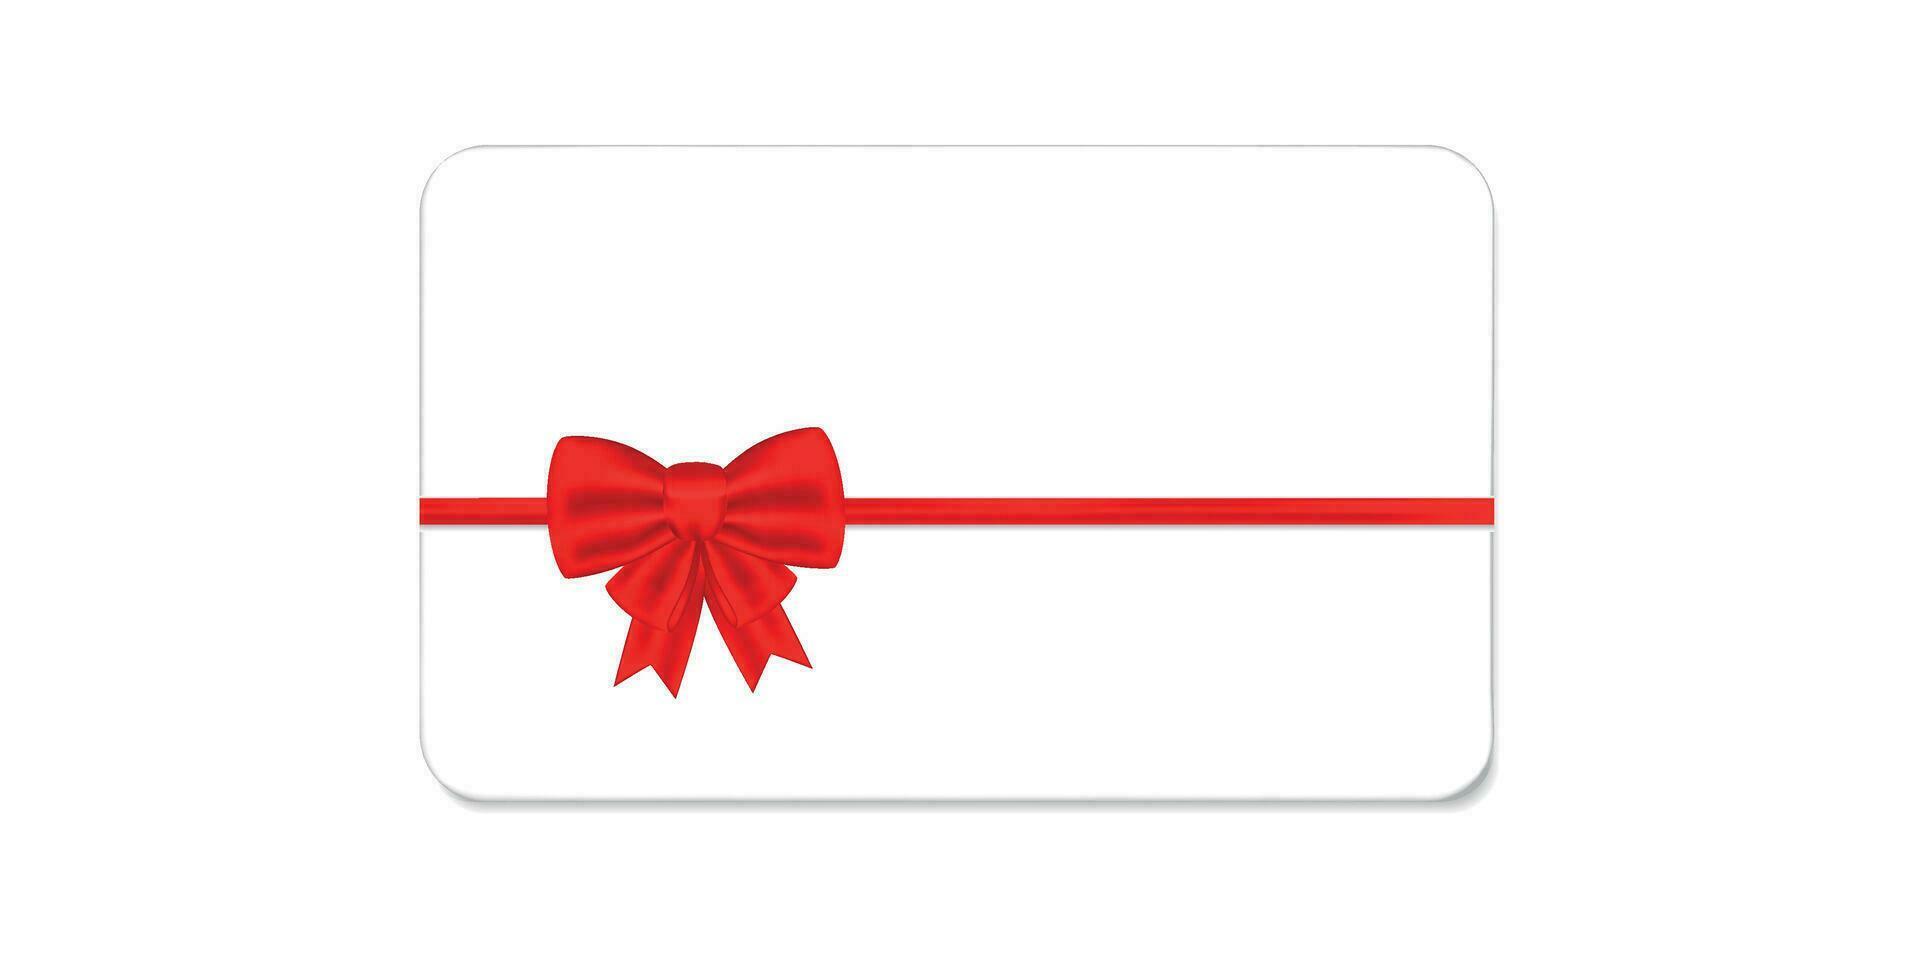 regalo.vip tarjeta con rojo arco en blanco fondo.tarjeta con rojo arco.descuento cupón.cinta.vector ilustración.premium tarjeta.regalo tarjeta alegre Navidad con rojo cinta y arco vector